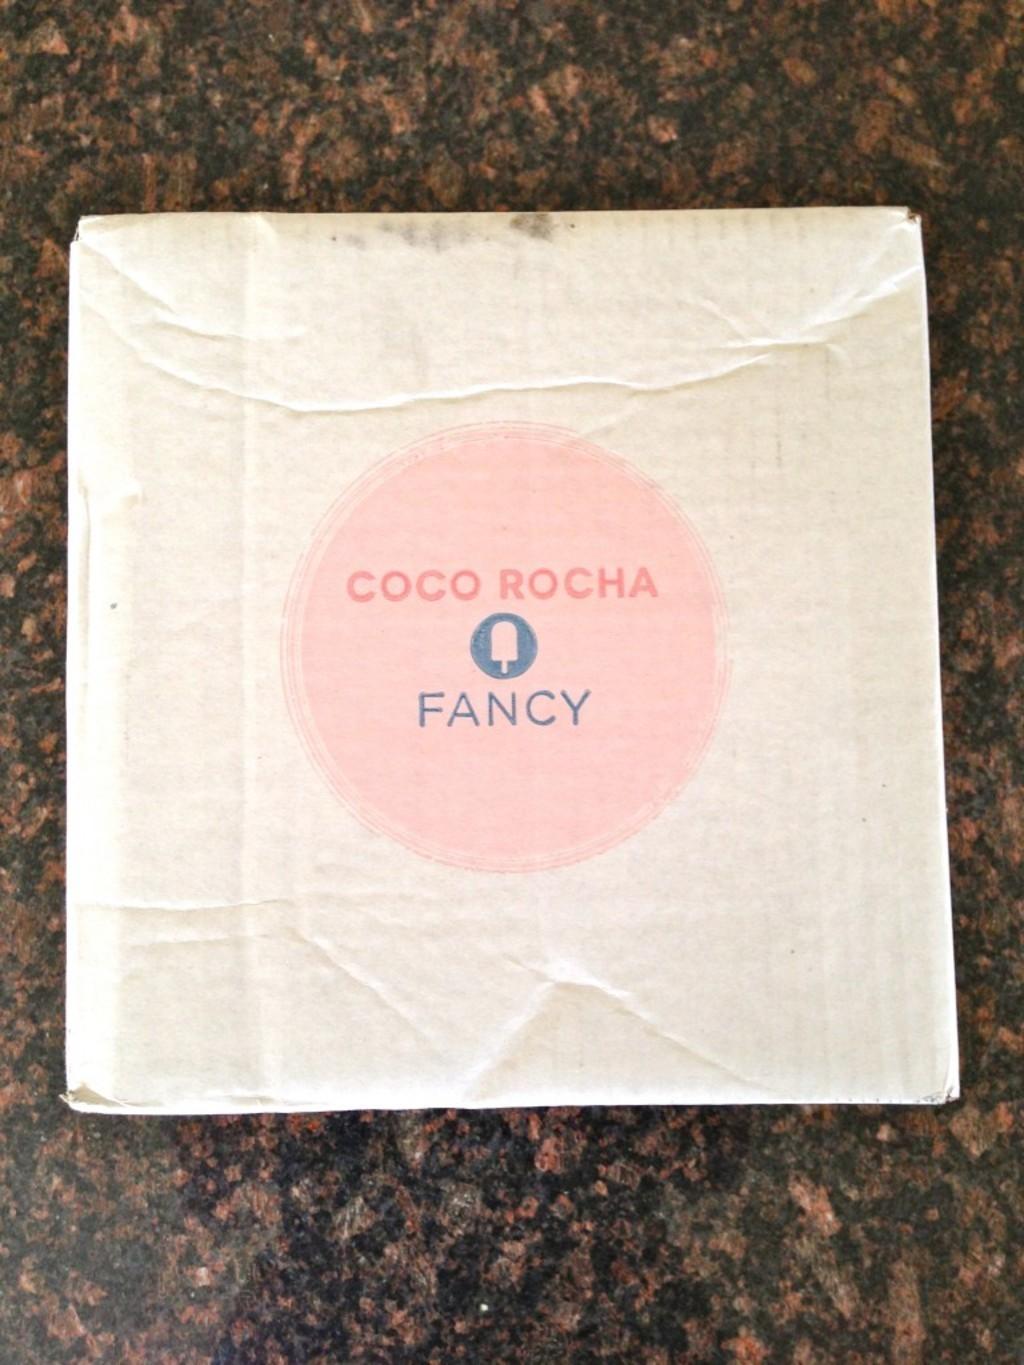 June Coco Rocha Fancy Box